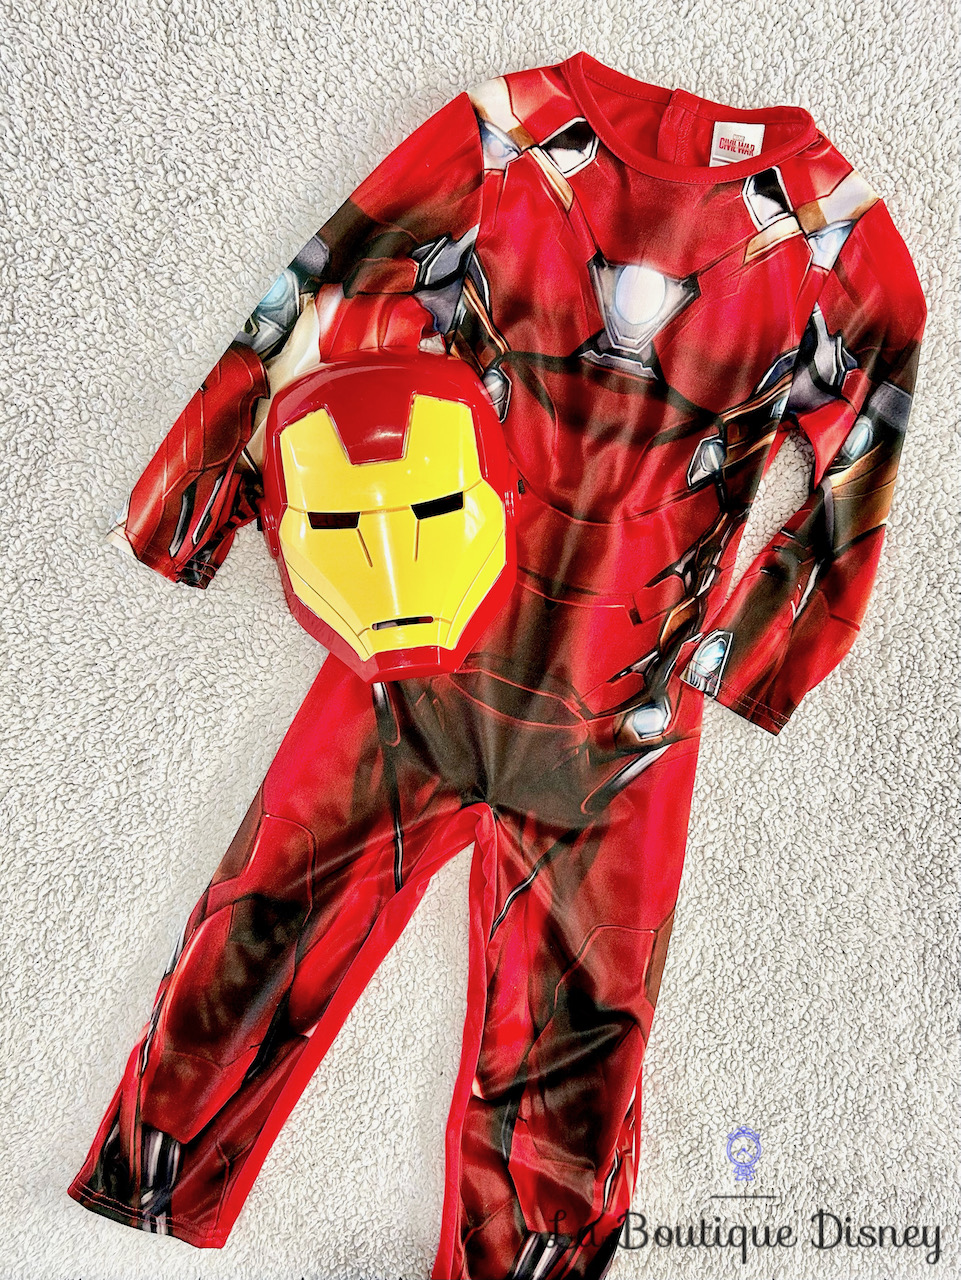 Déguisement Iron Man Marvel Civil War Disney Rubies taille 3/4 ans combinaison rouge masque